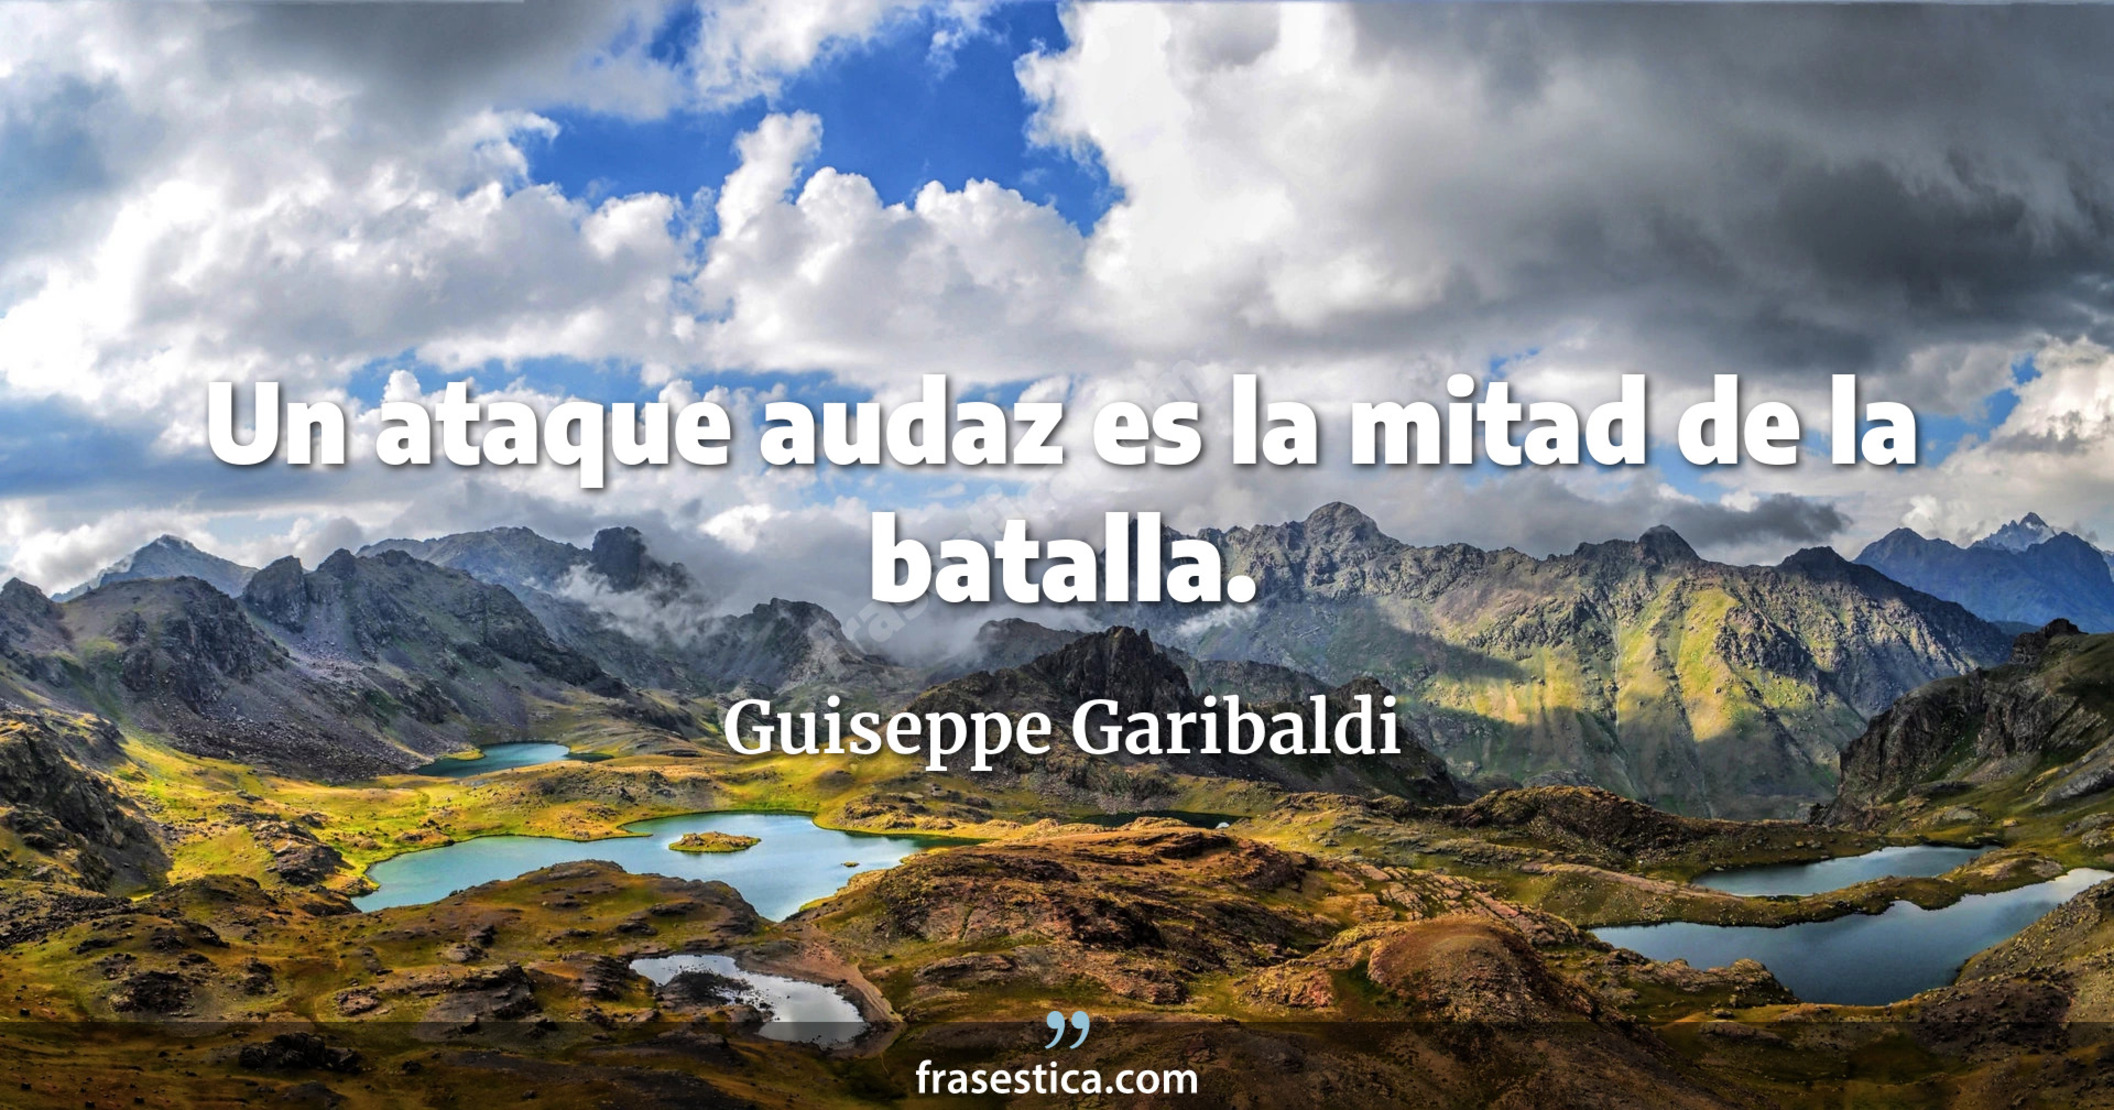 Un ataque audaz es la mitad de la batalla. - Guiseppe Garibaldi